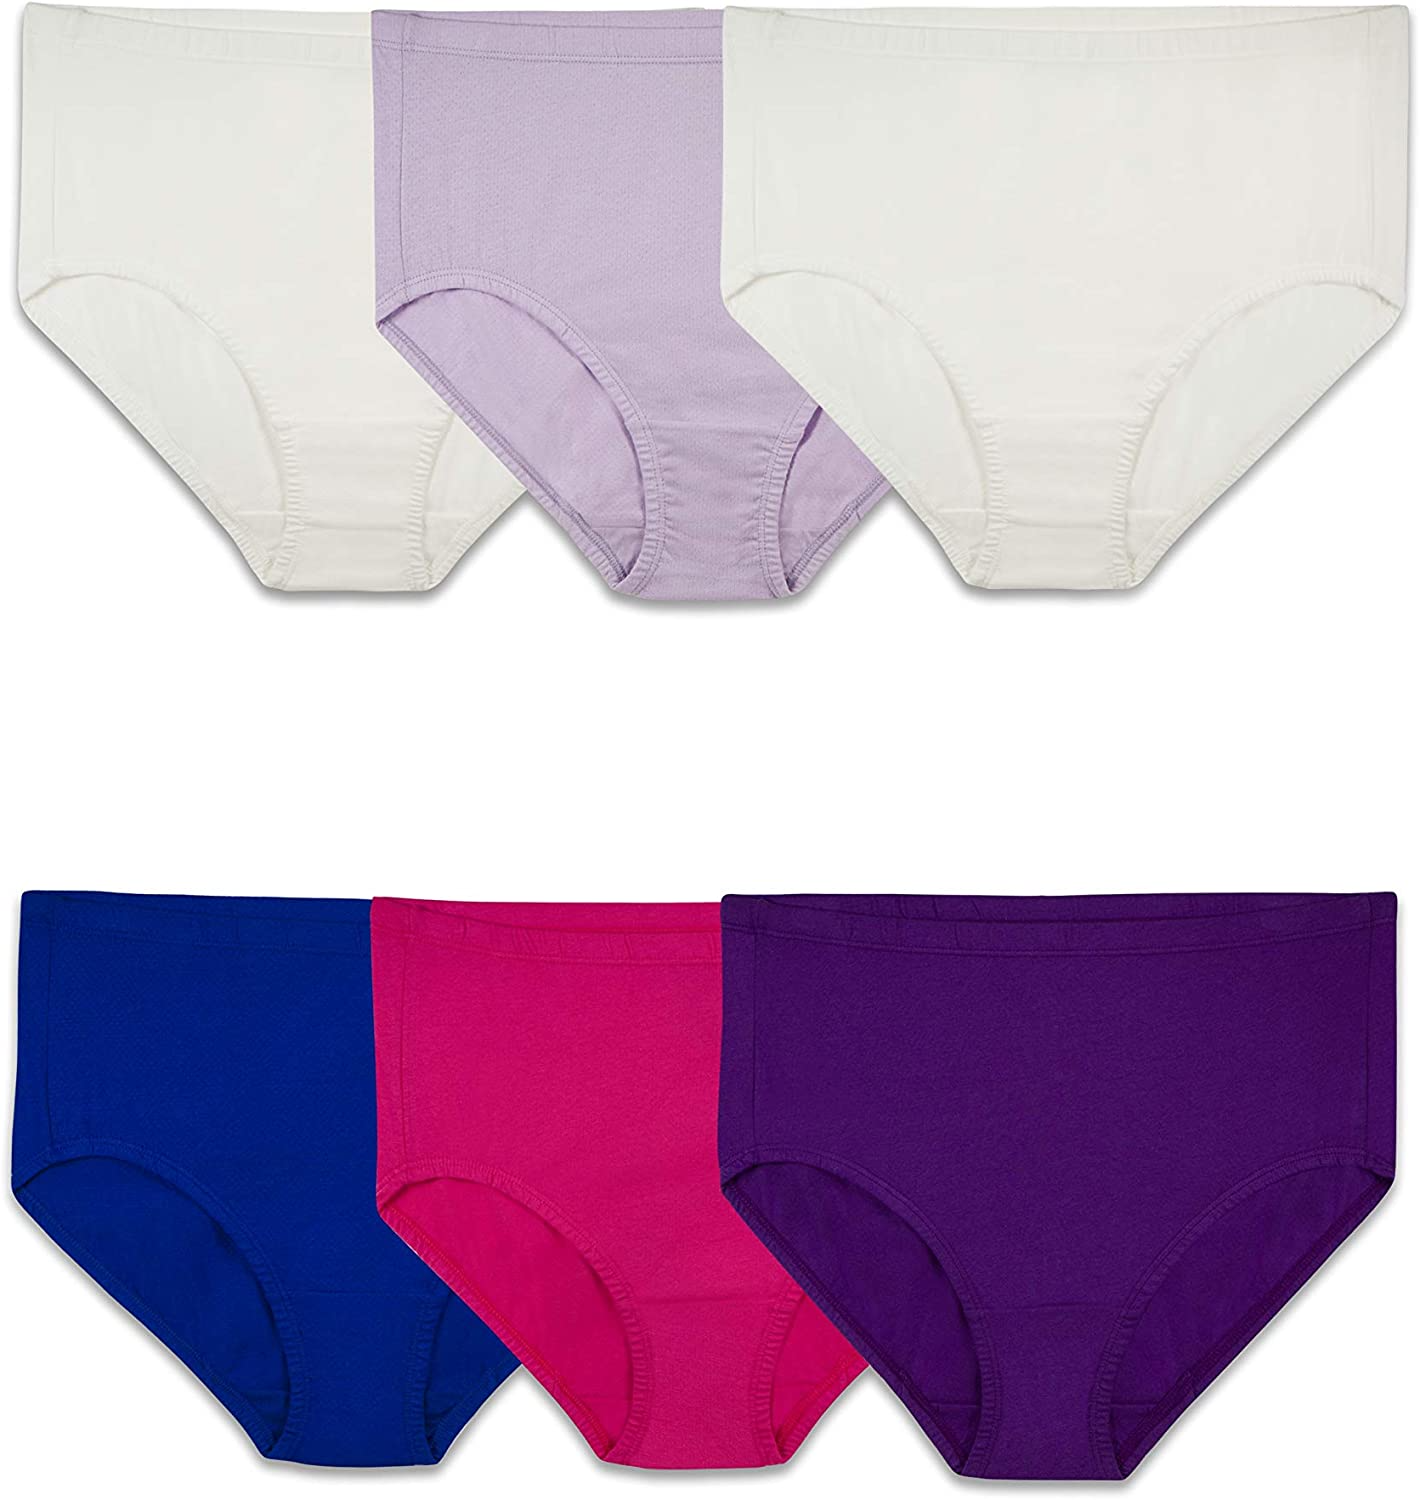 Fruit of the Loom Girls Brief Underwear, 14 Pack Panties, Sizes 4